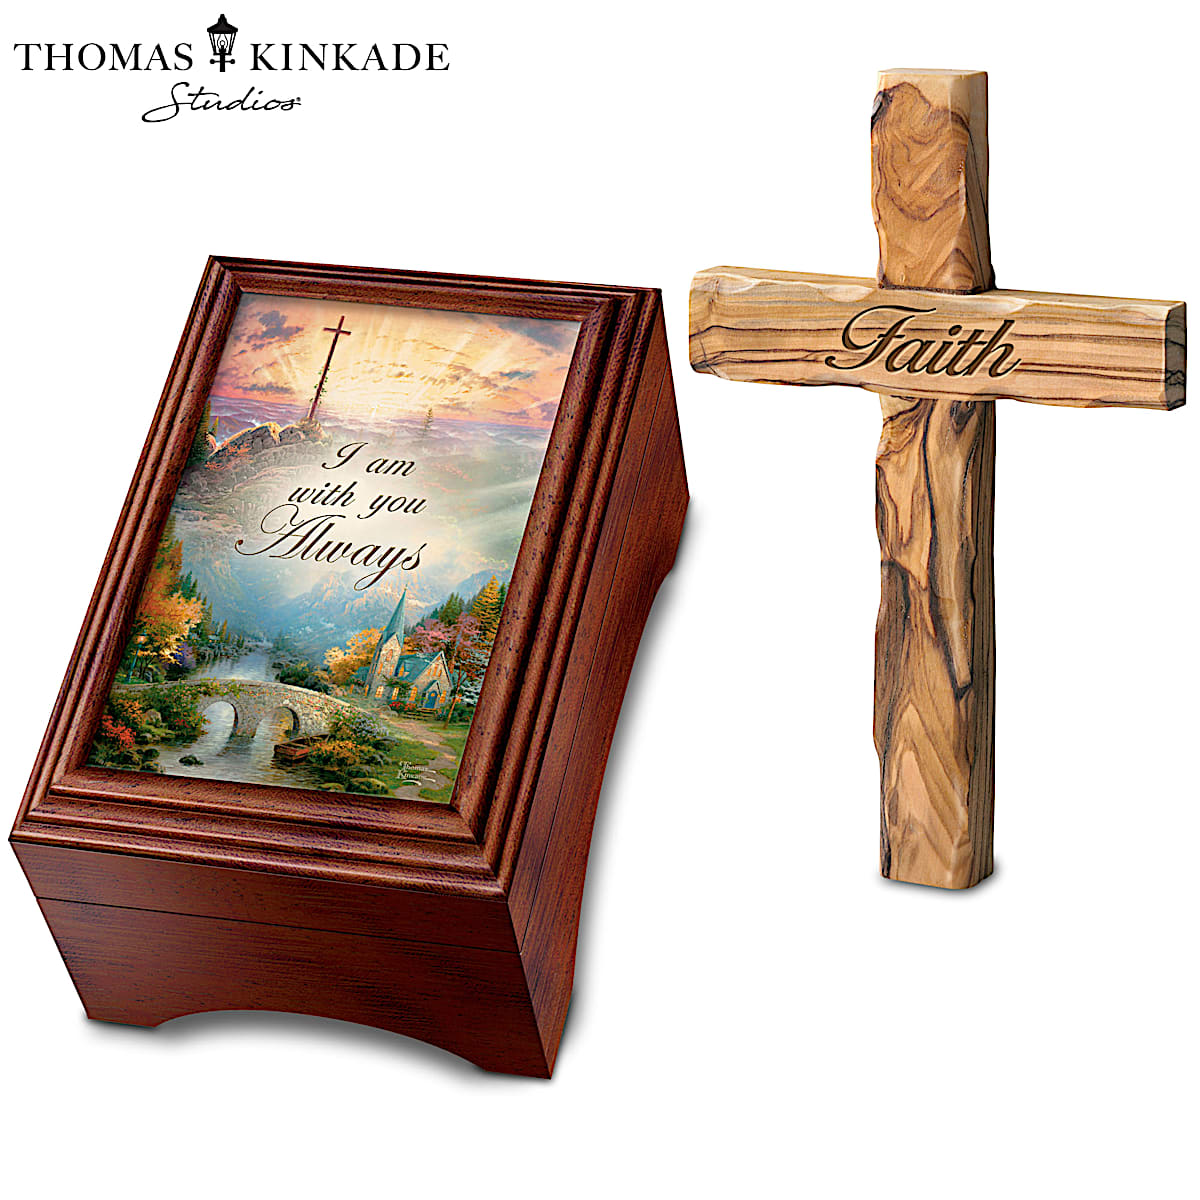 The Bradford Exchange Thomas Kinkade Holy Land Olive Wood Cross and Keepsake Box